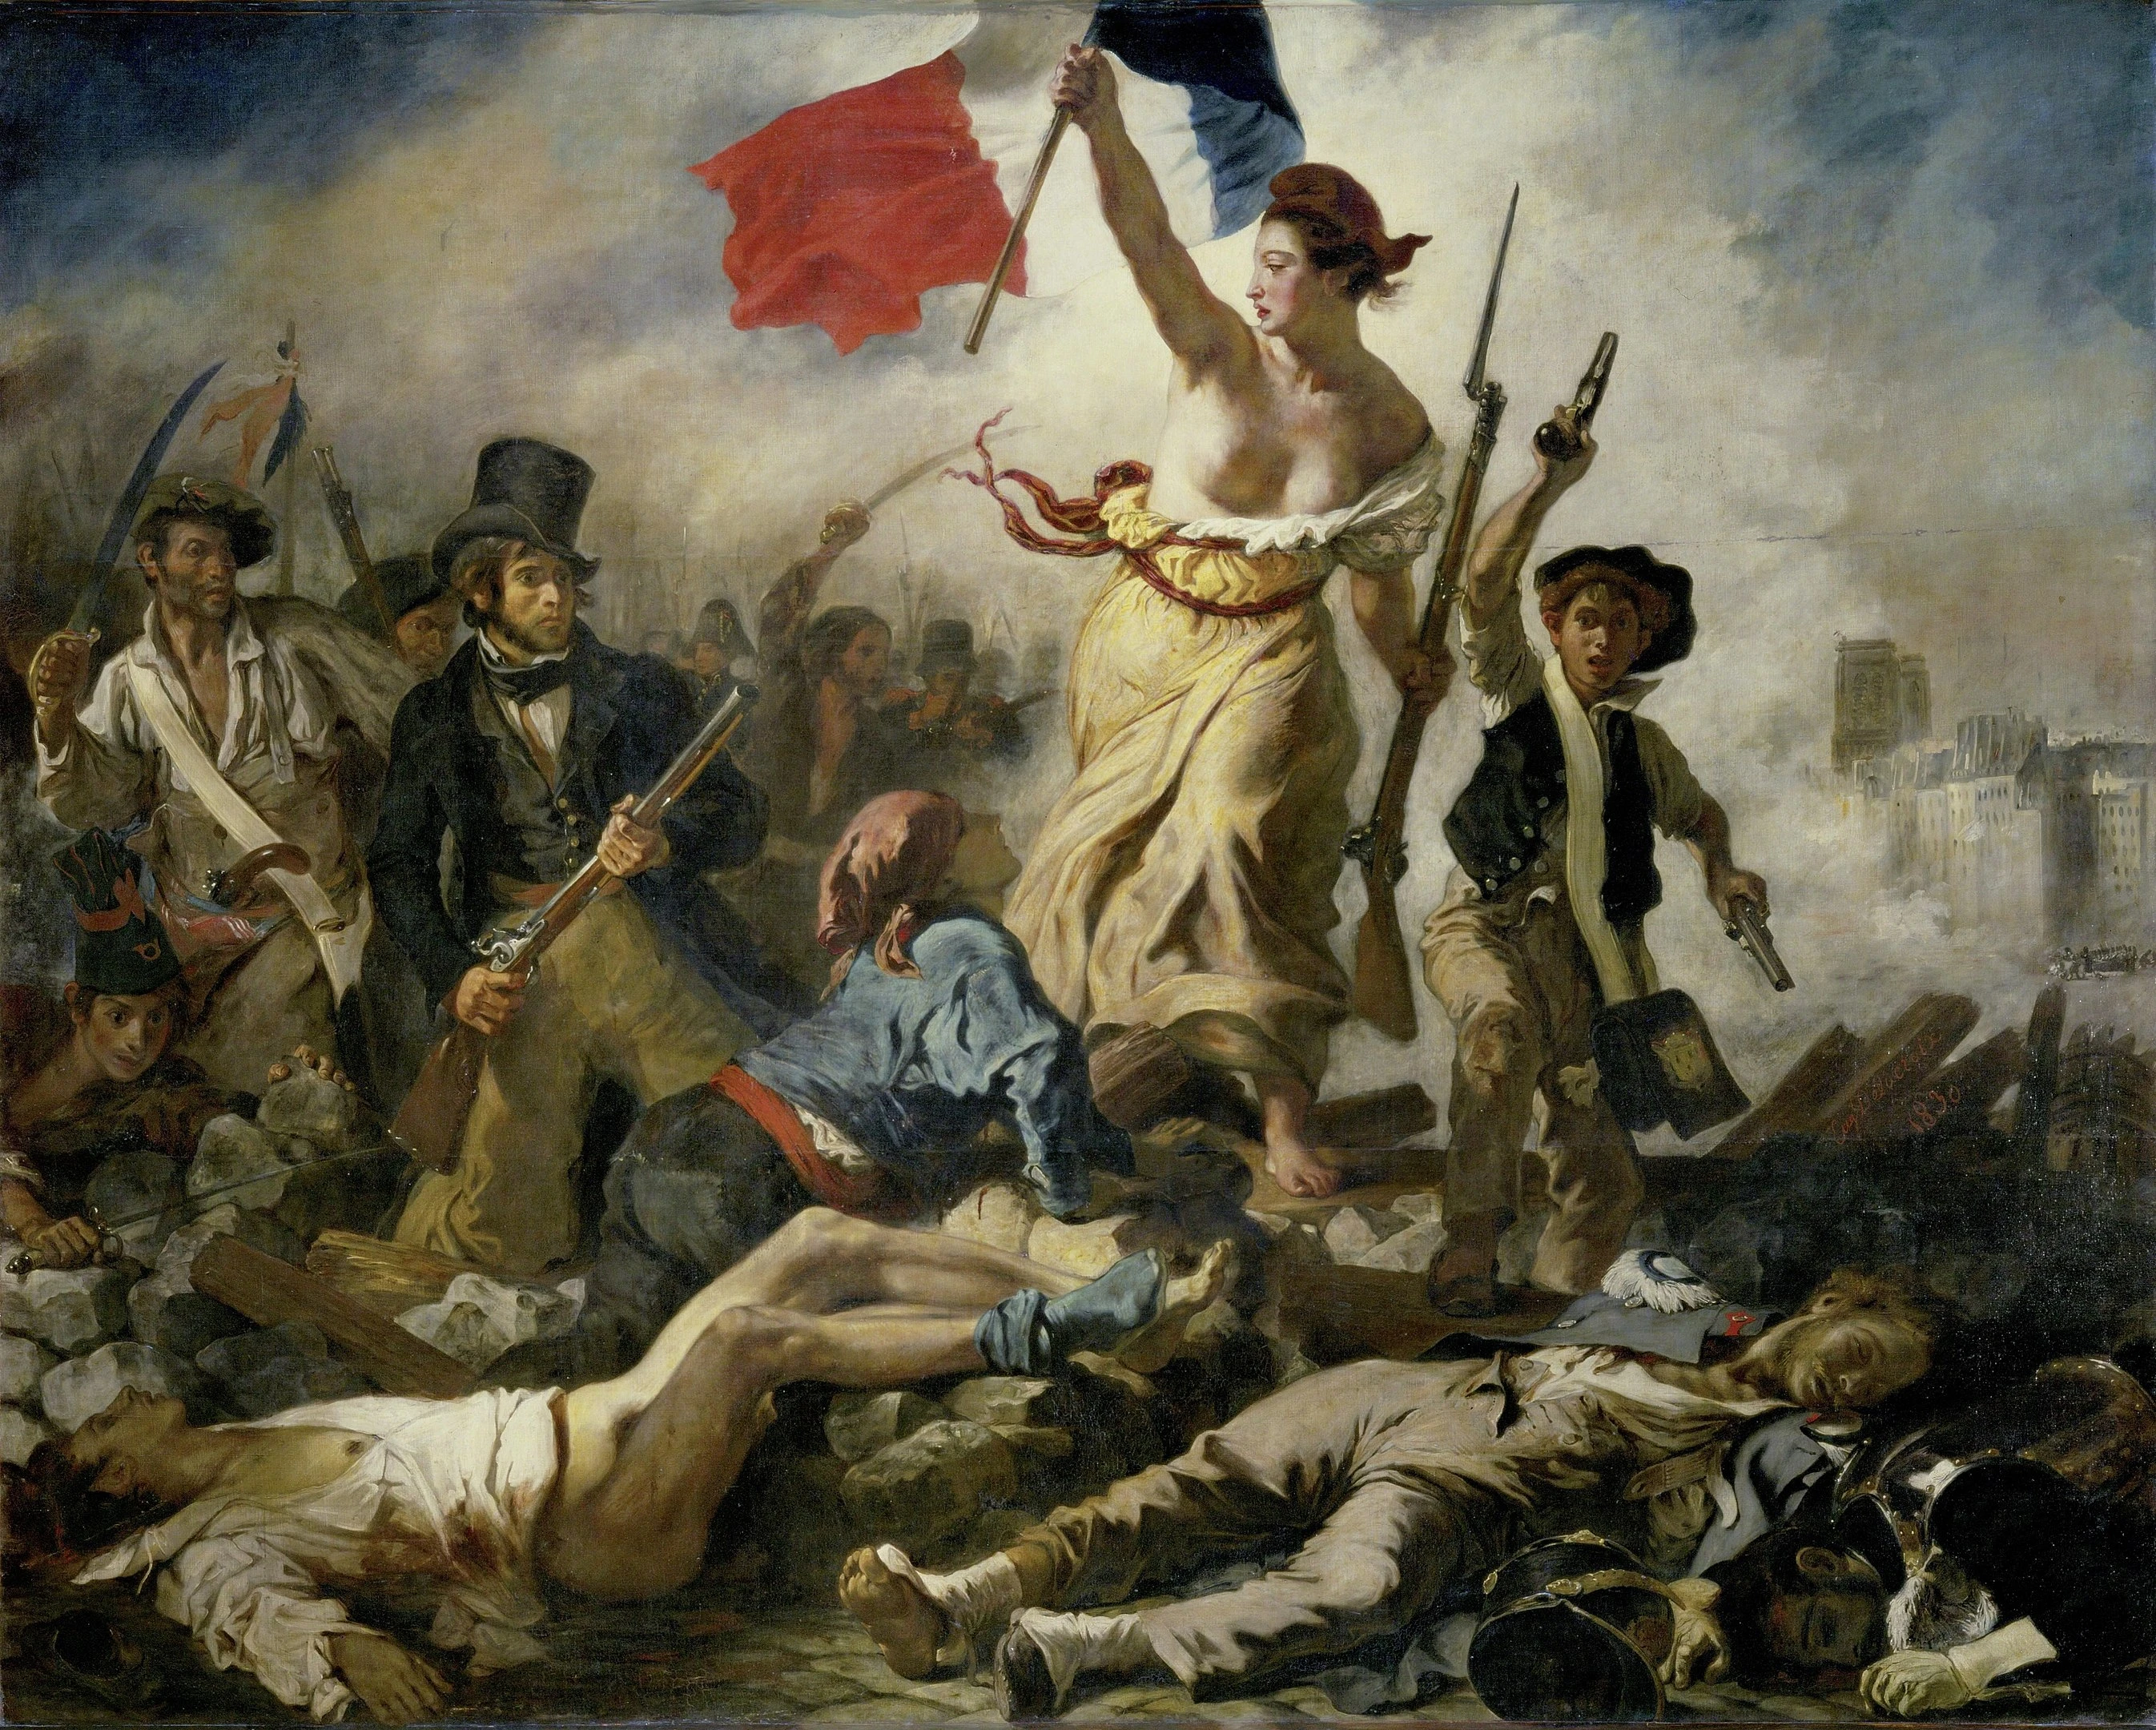 Le bonnet phrygien coiffe "la Liberté guidant le Peuple" sur le tableau de Eugène Delacroix, réalisé en 1830 et qu'on peut voir au Musée du Louvre à Paris.